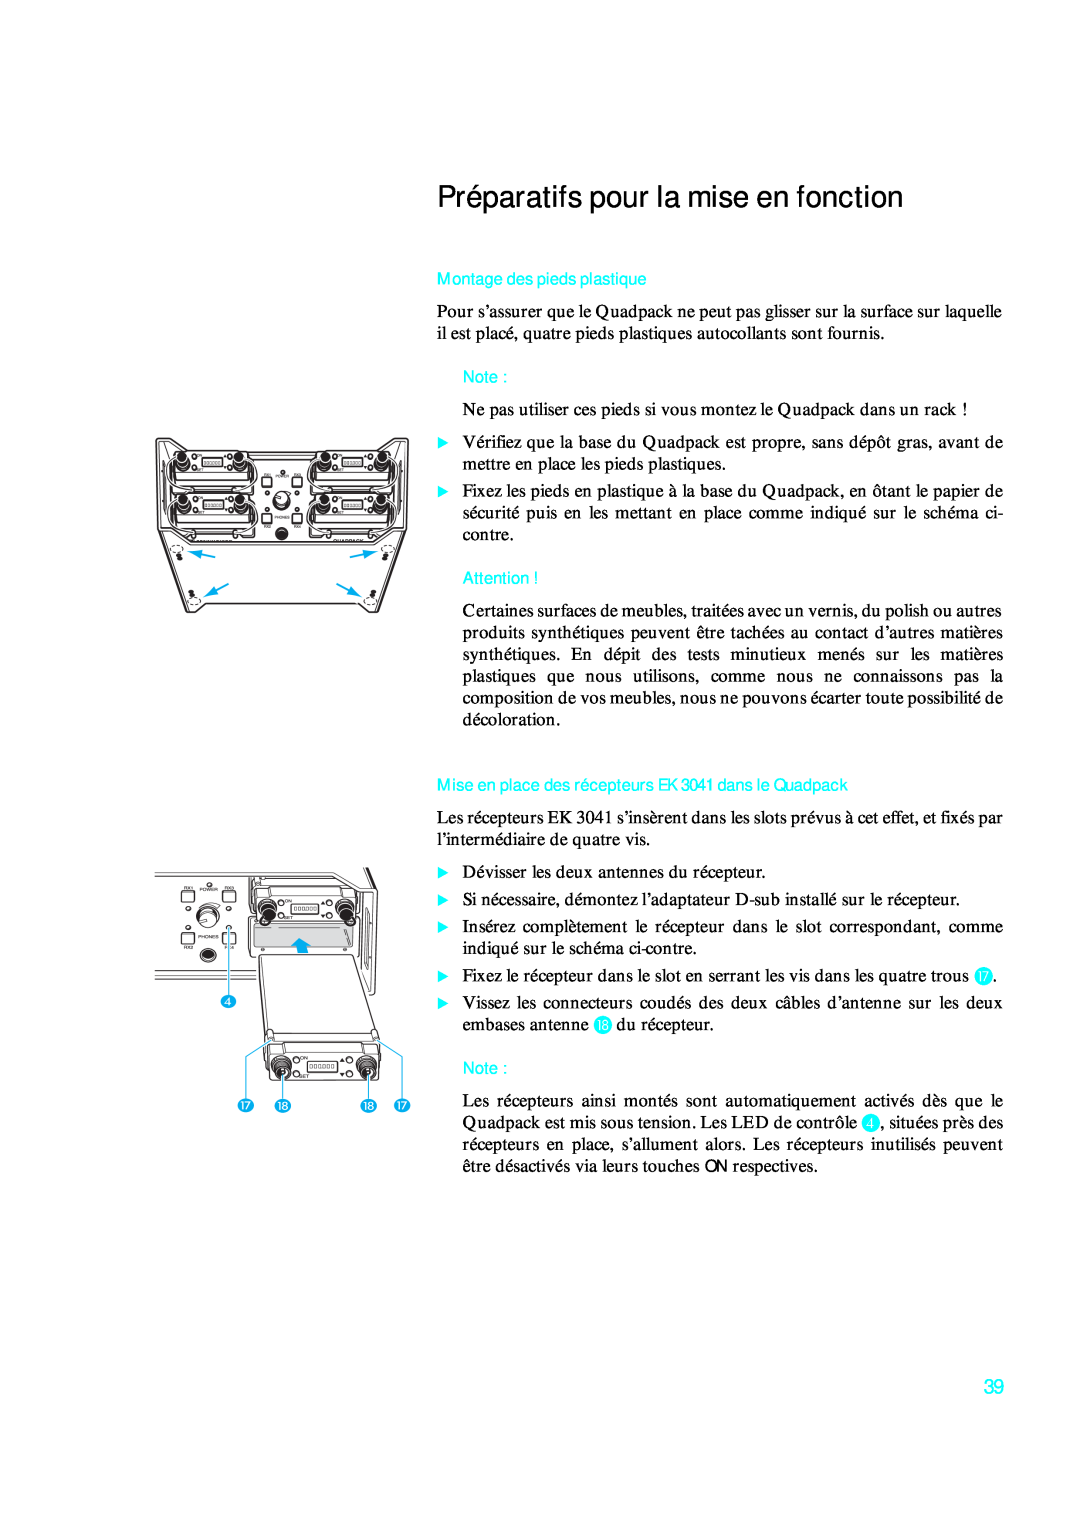 Sennheiser qp 3041 instruction manual Préparatifs pour la mise en fonction, Montage des pieds plastique 